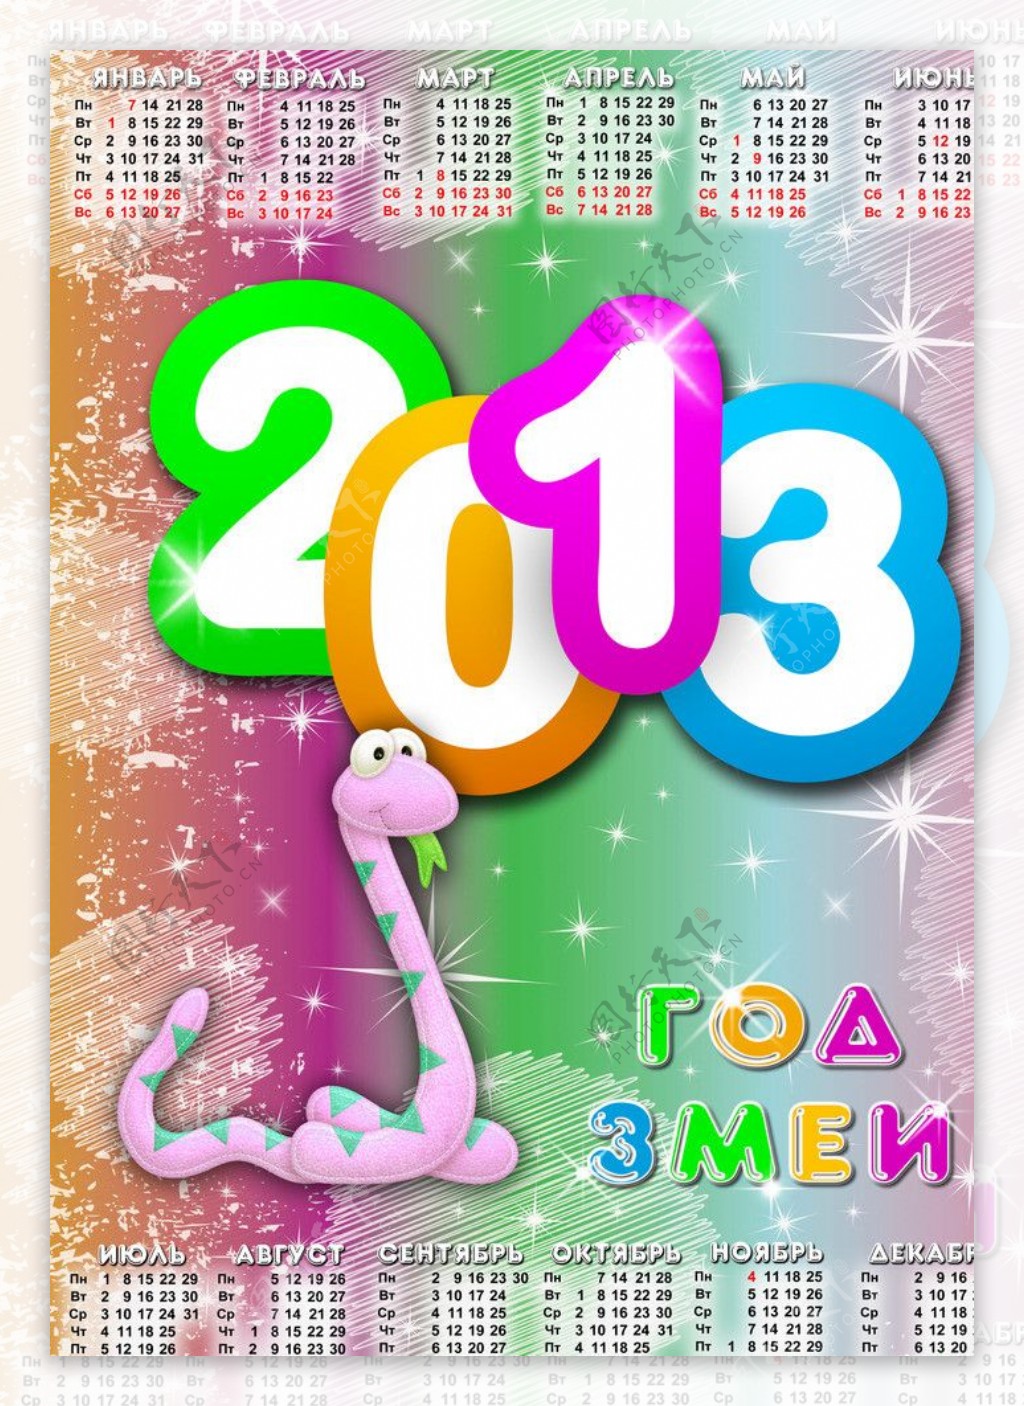 2013蛇年年历